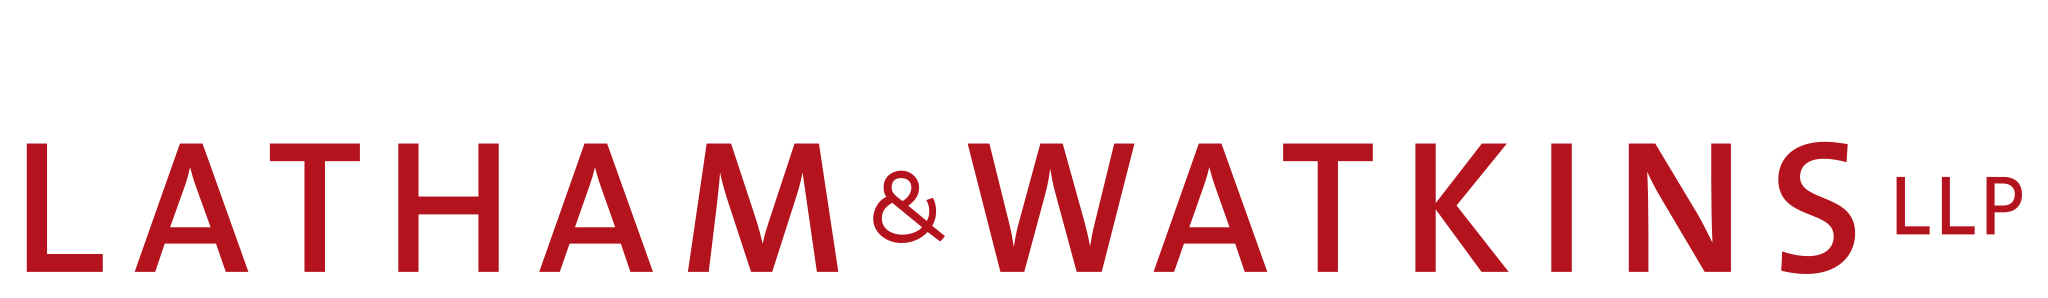 Latham & Watkins Logo - Free download logo in SVG or PNG format